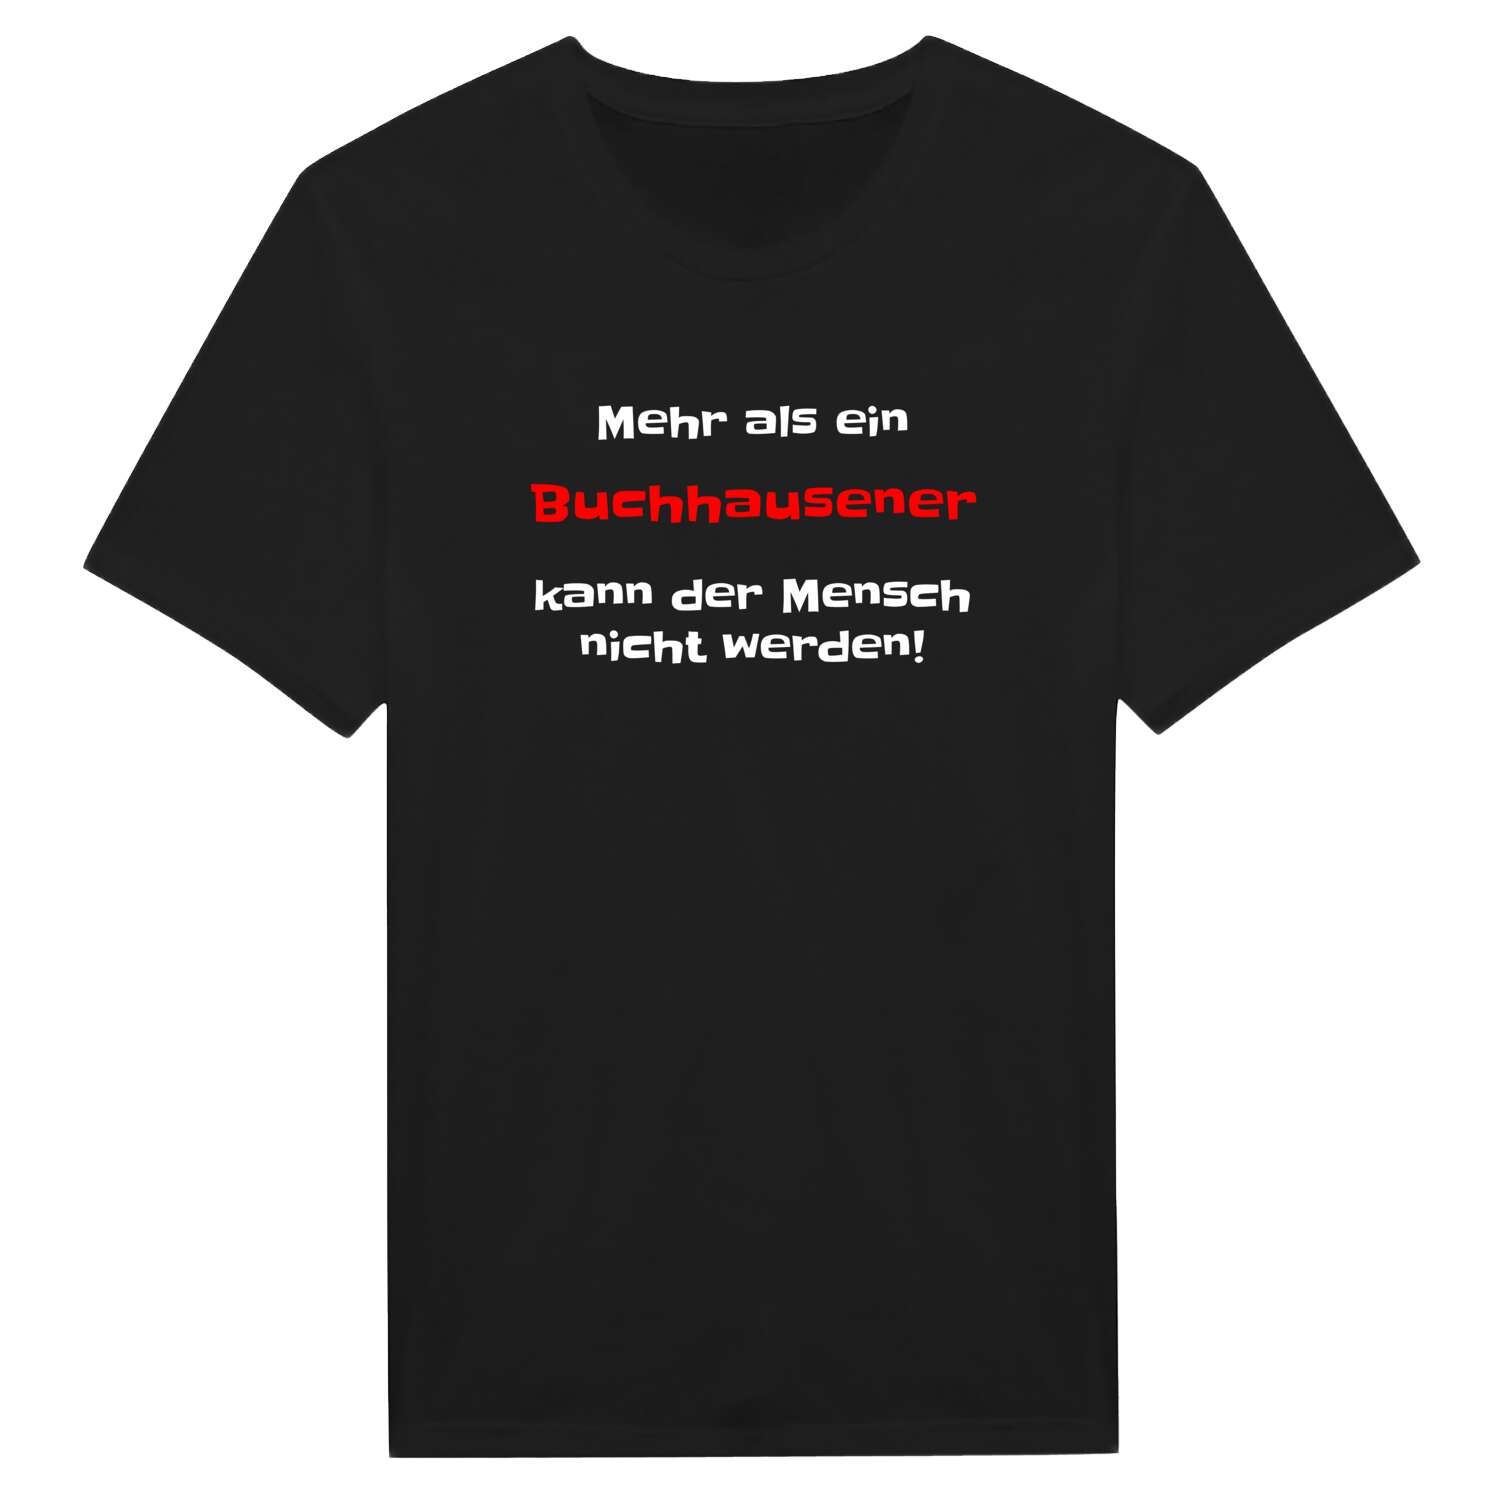 Buchhausen T-Shirt »Mehr als ein«